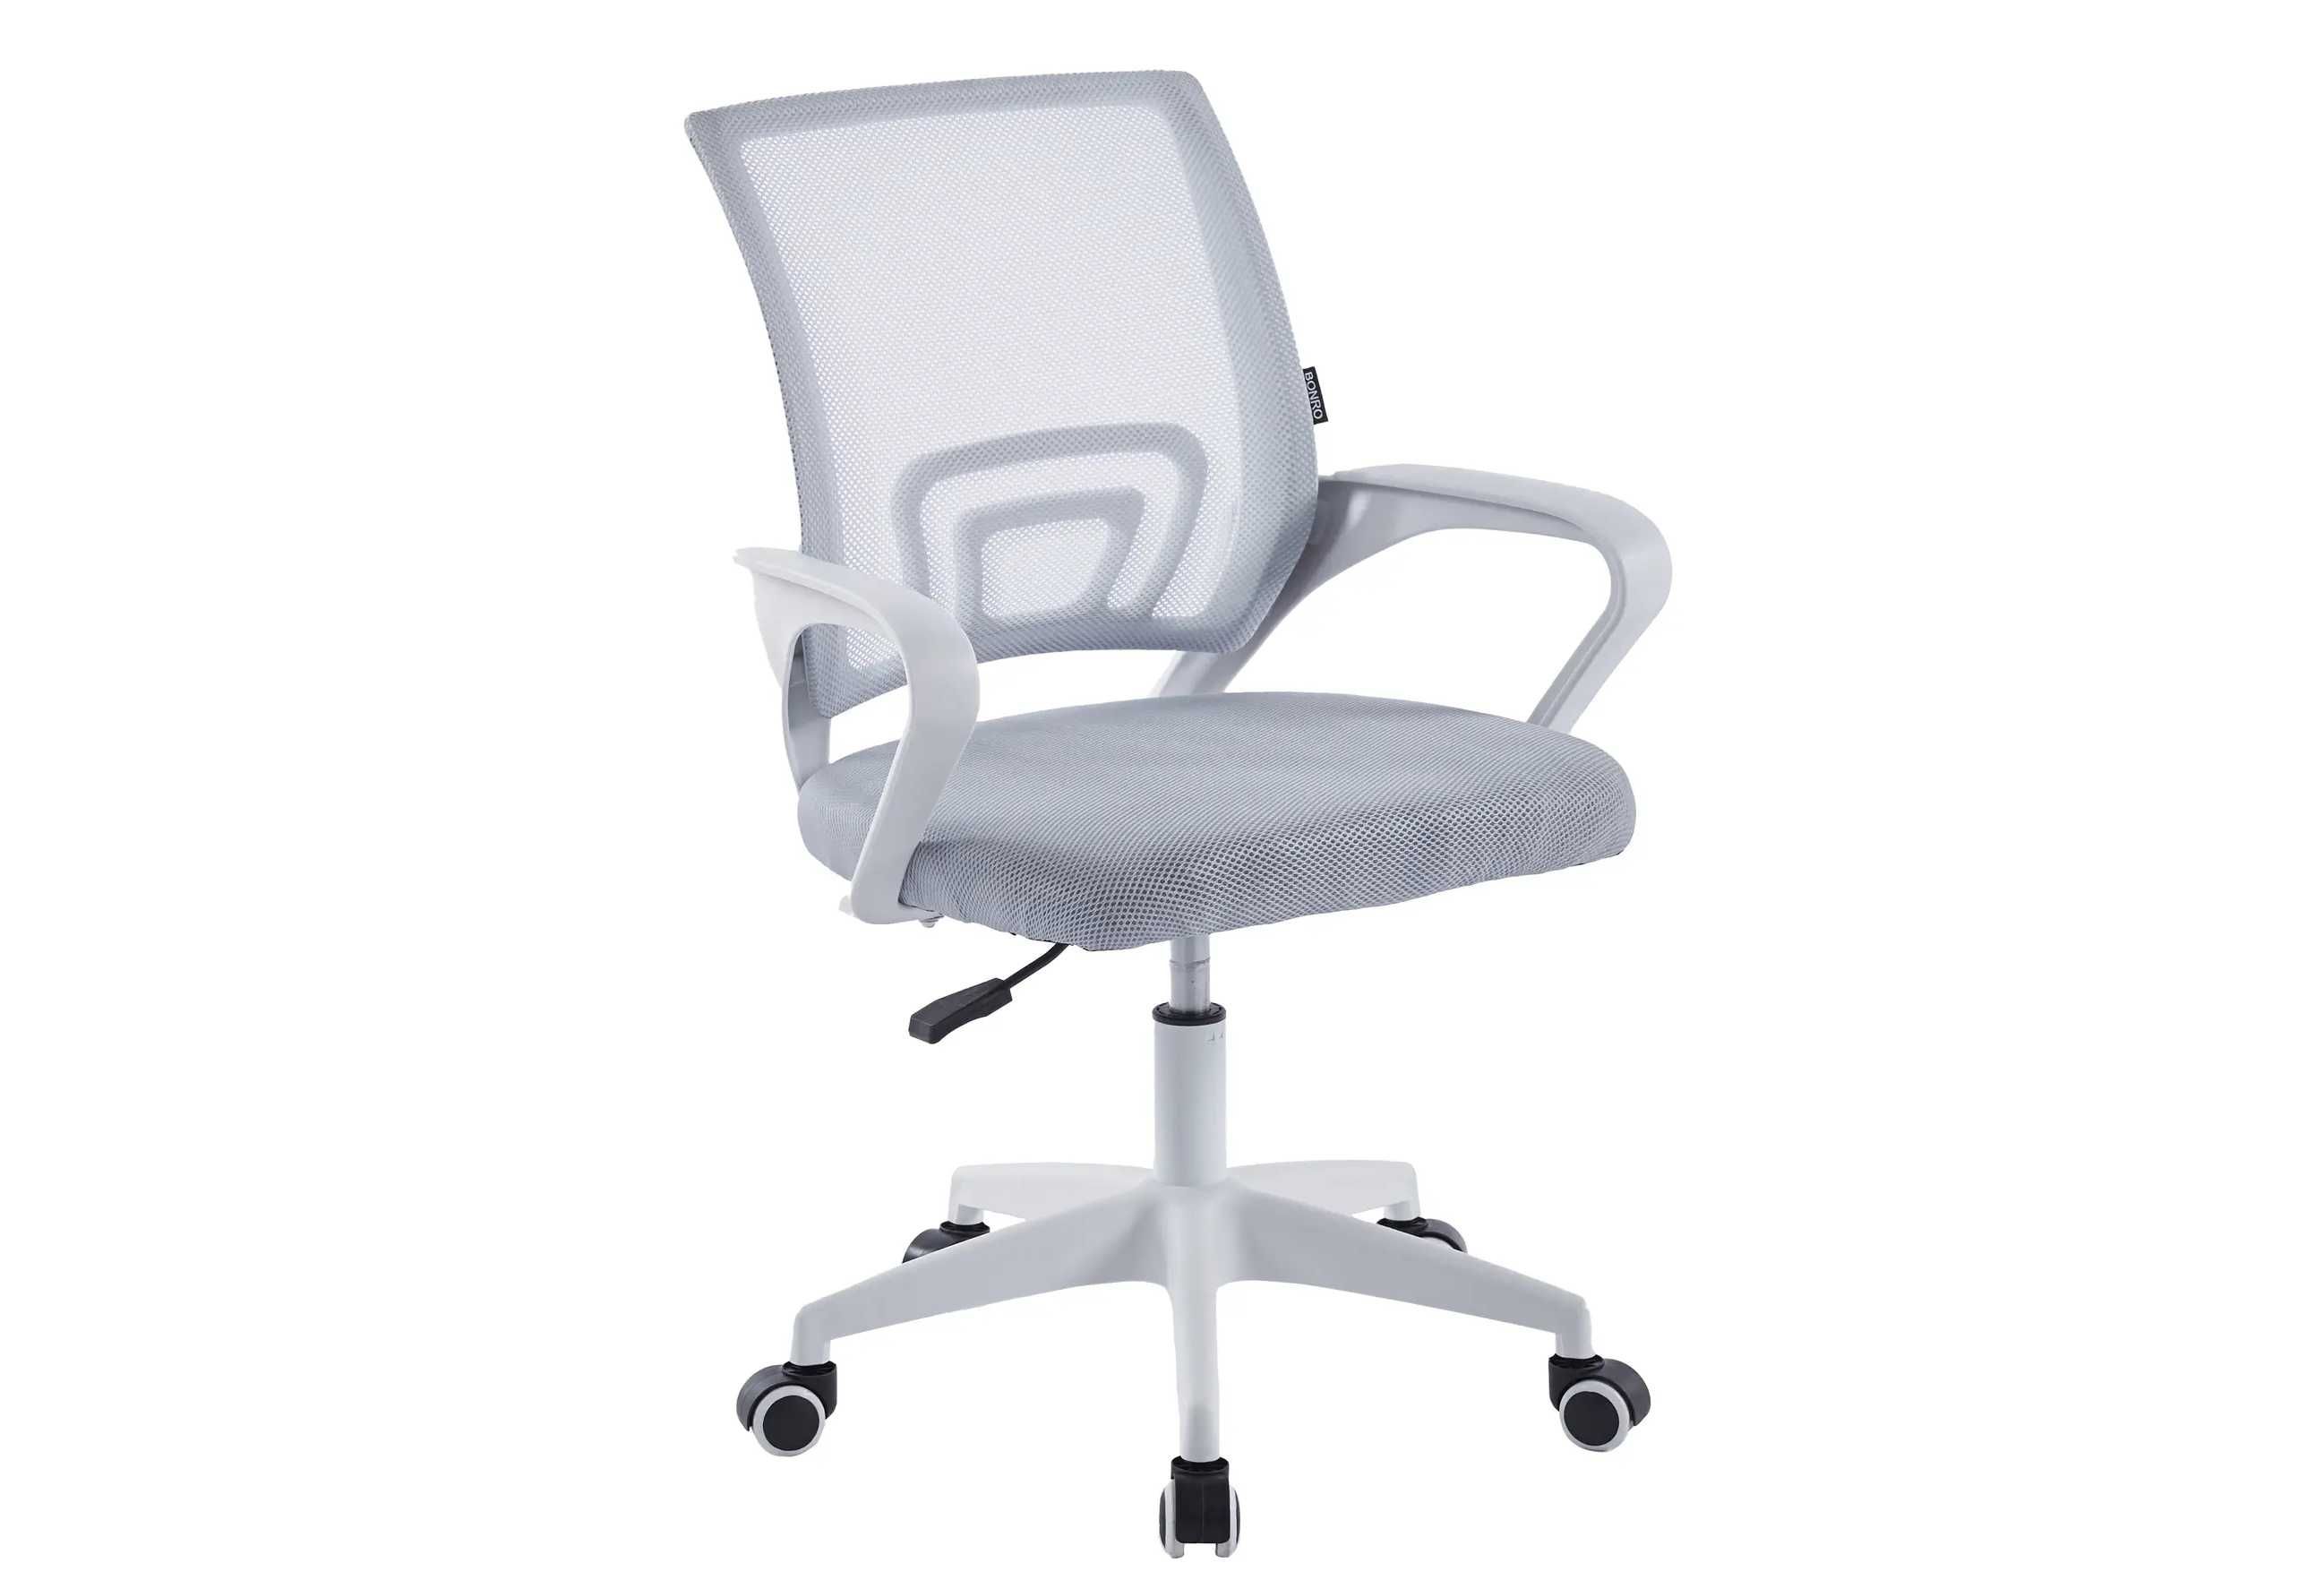 Недорого кресло офисное компьютерное белое+серое стул на колесах